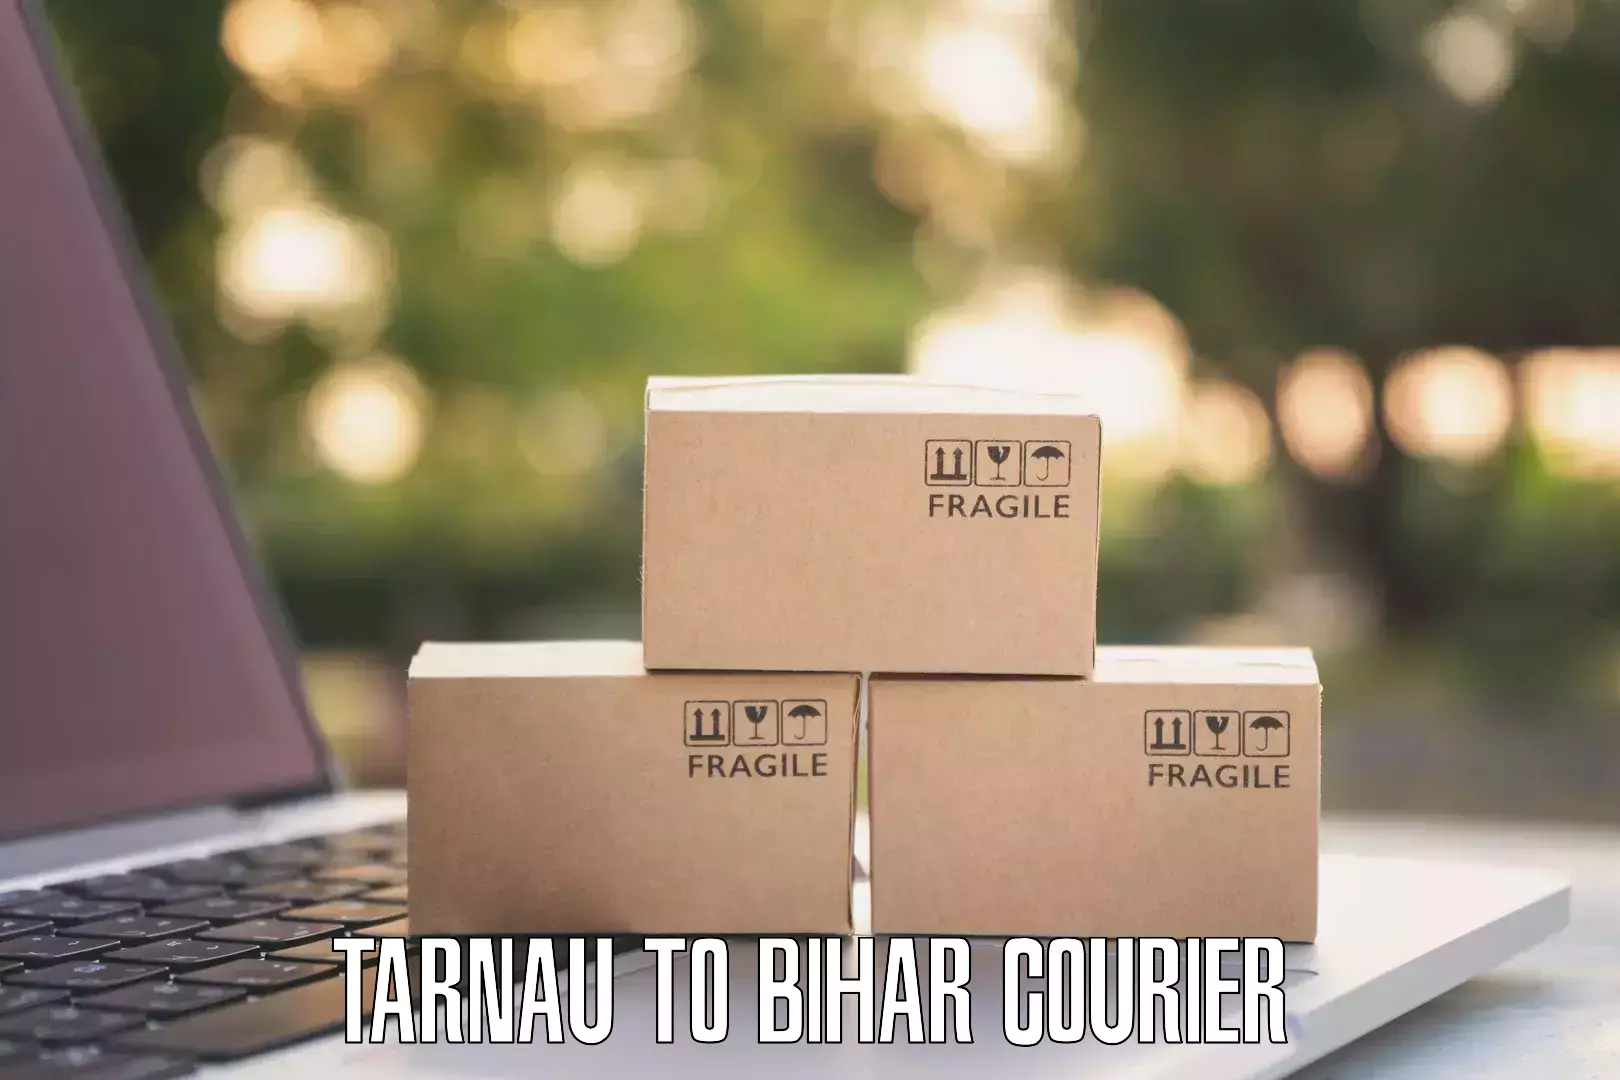 Quality courier partnerships Tarnau to Malmaliya